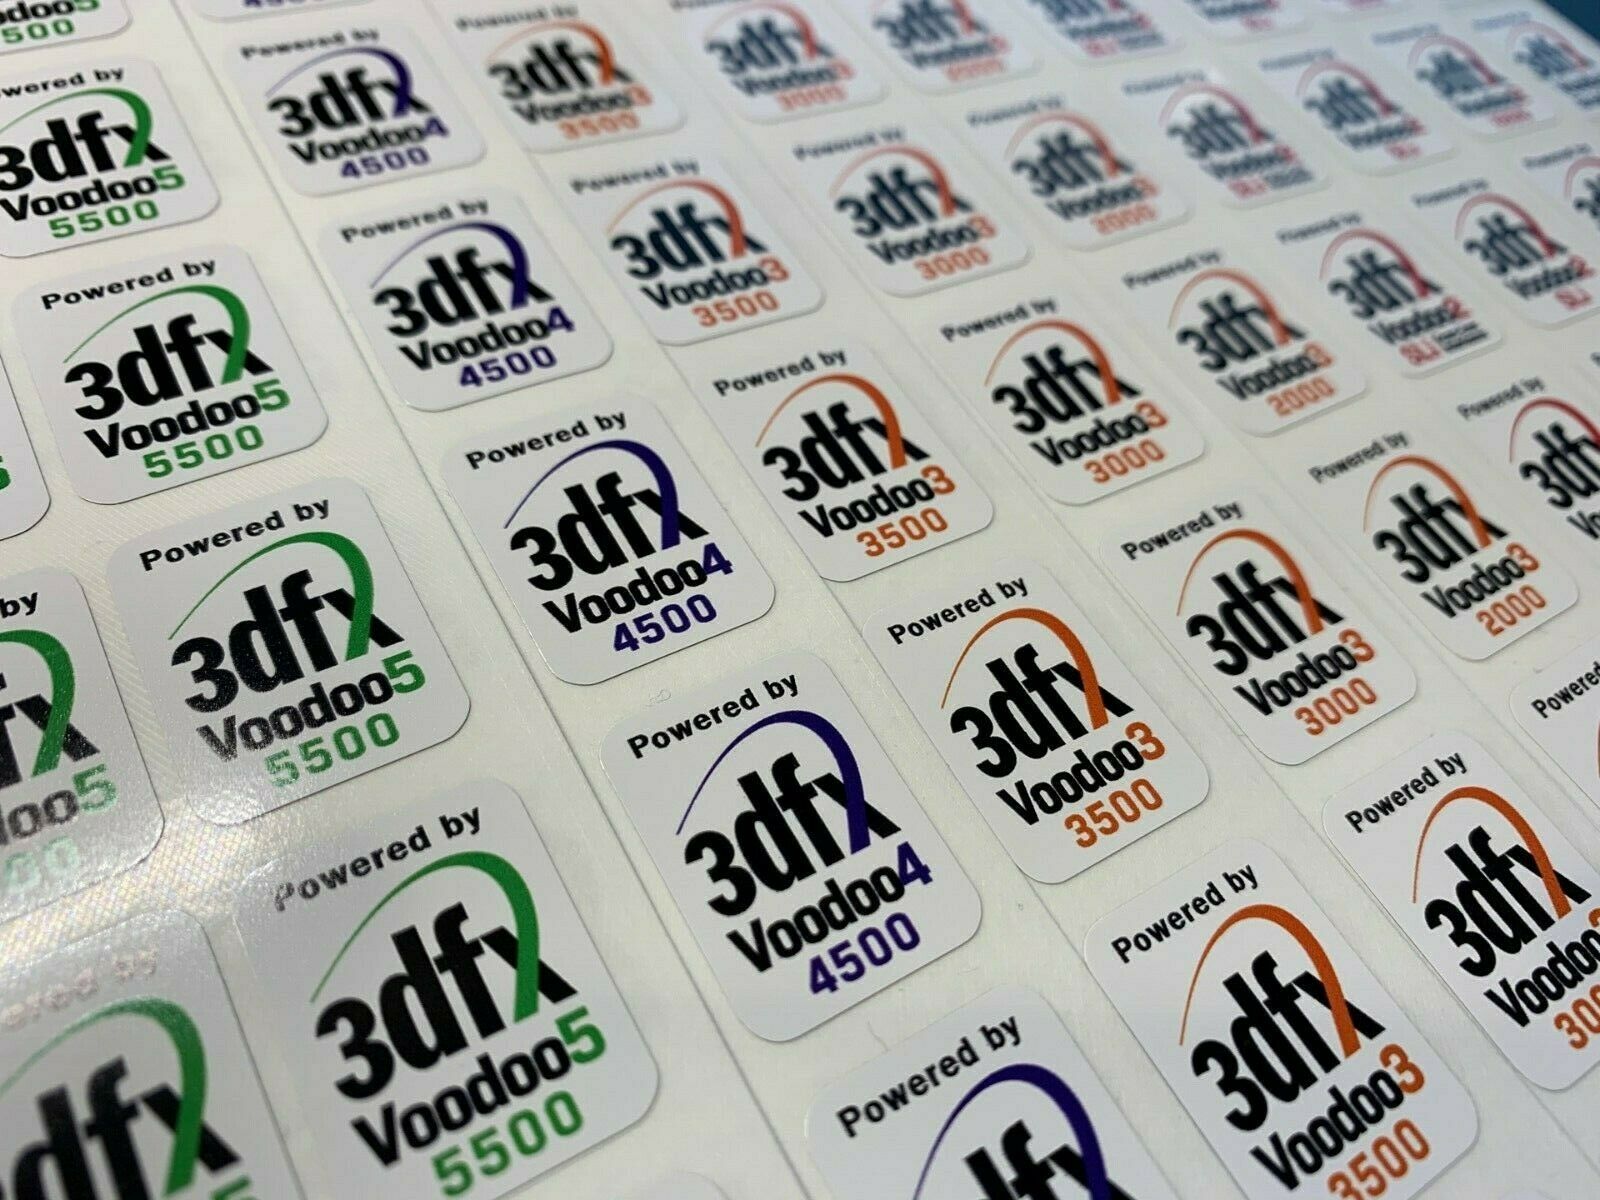 3dfx Voodoo 2000 3000 3500 4500 5500 Banshee Vintage Computer Case Badge Sticker